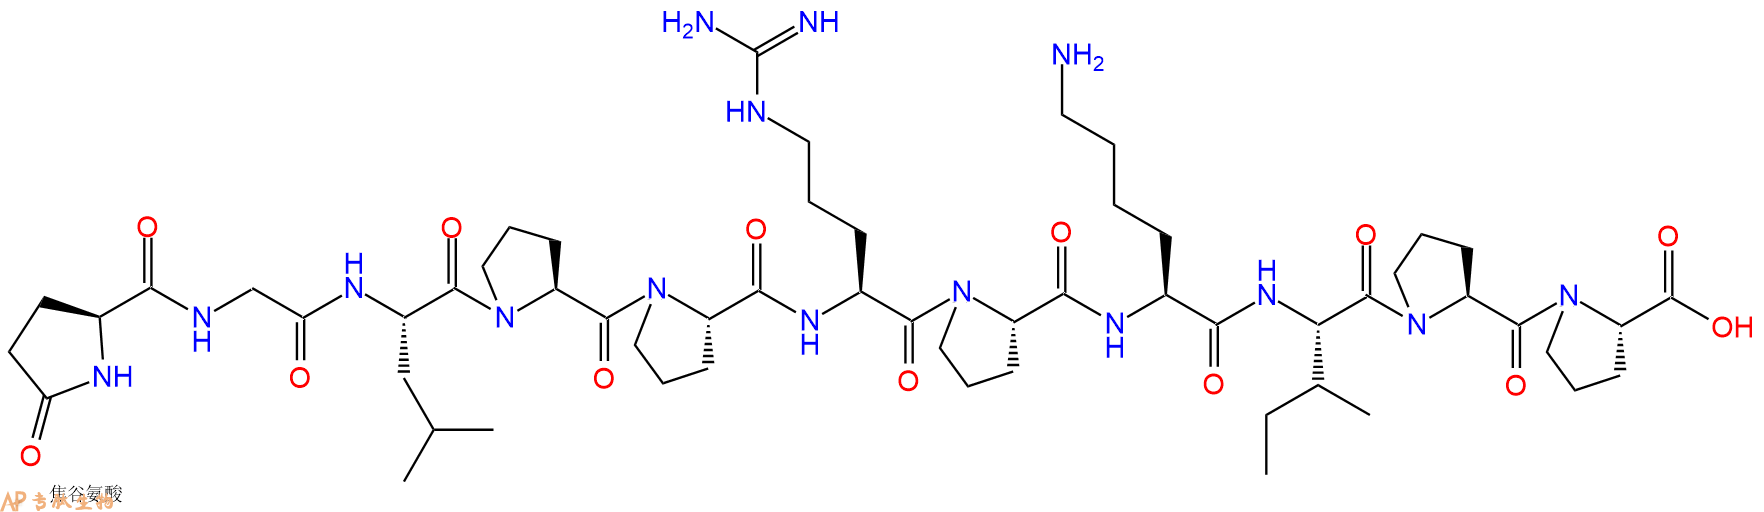 专肽生物产品血管紧张素 Angiotensin I Converting Enzyme Inhibitor、缓激肽增效剂B Bradykinin Potentiator B30892-86-5